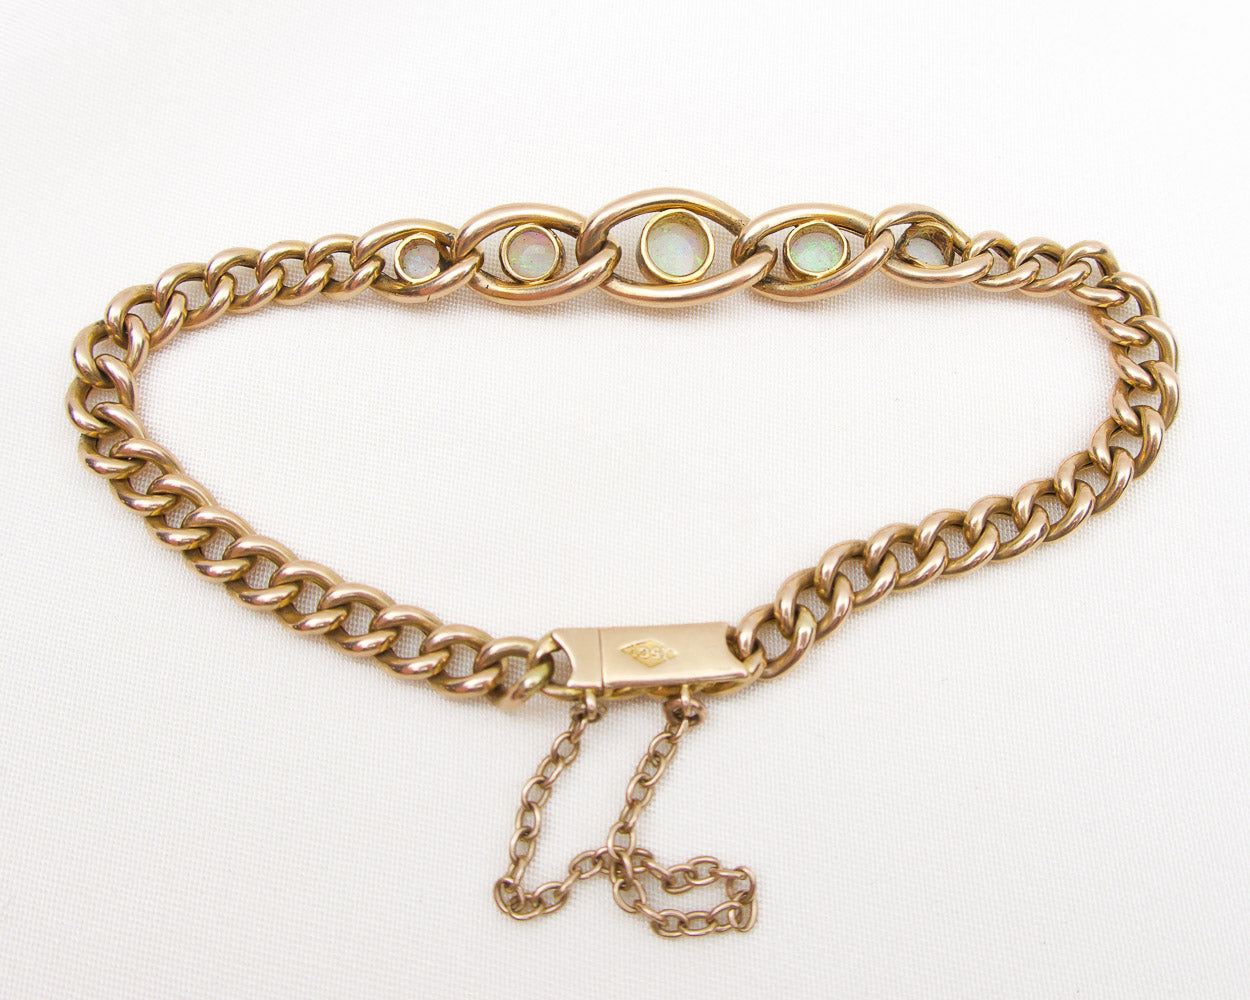 Victorian Opal Bracelet